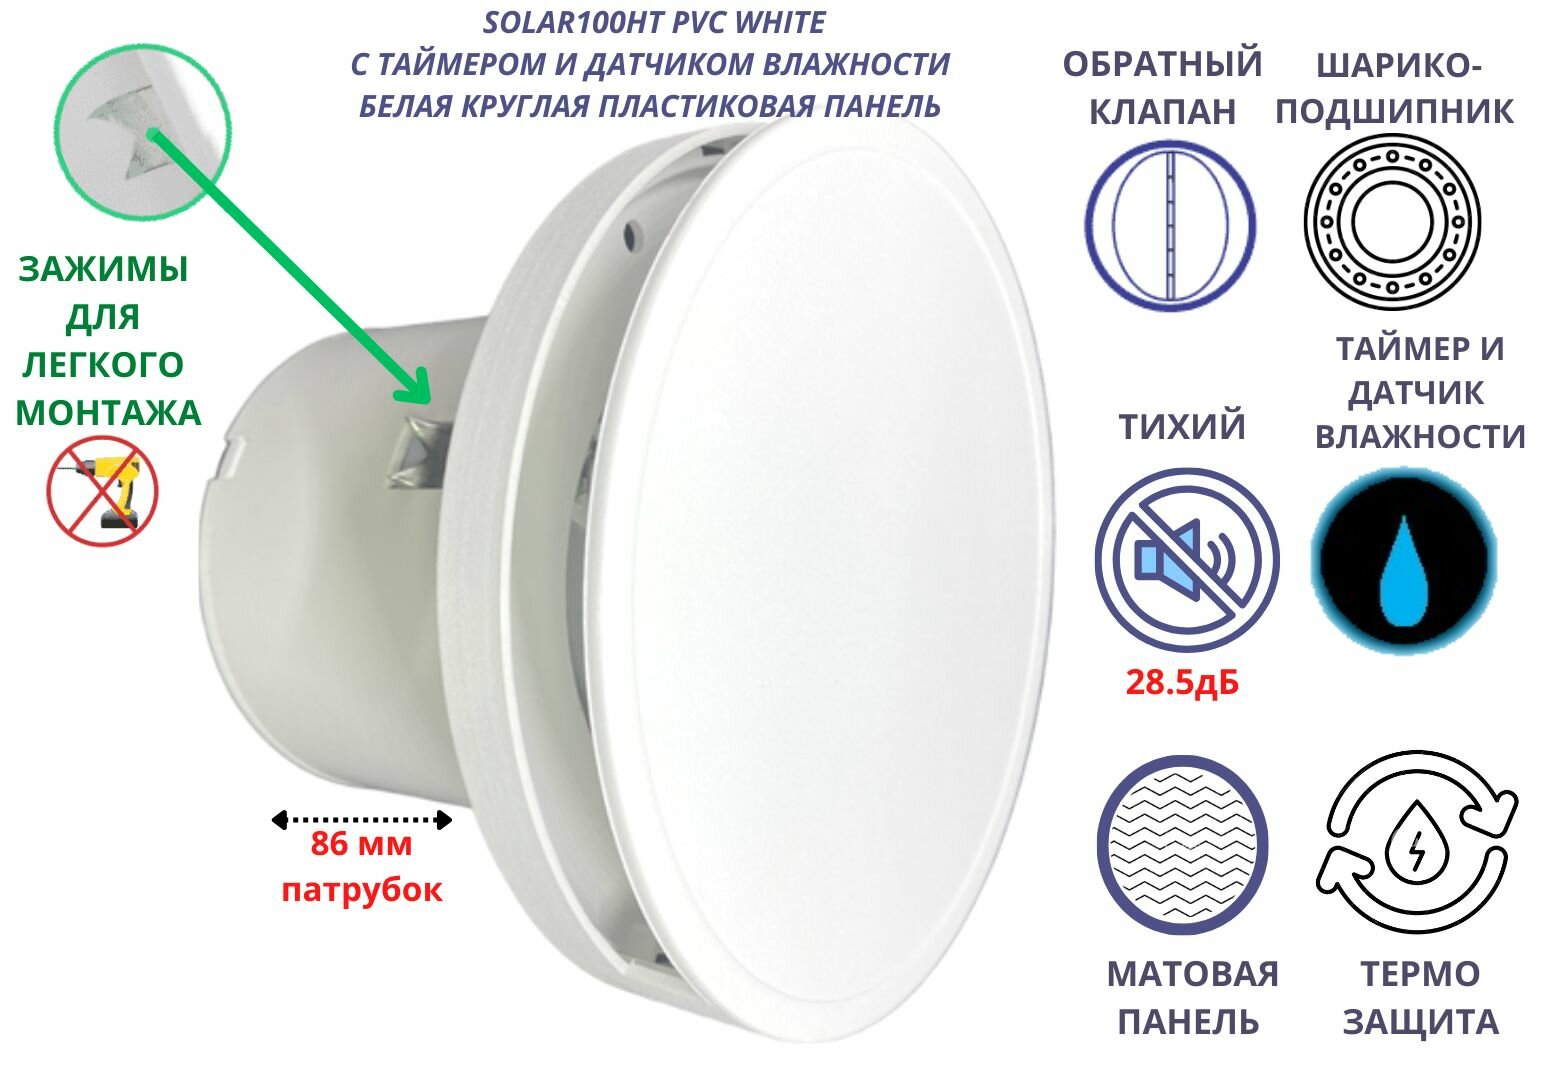 Вентилятор с таймером и датчиком влажности круглый малошумный (28,5дБ), с обратным клапаном, D100мм, VENTFAN Solar100, белый матовый пластик, Сербия